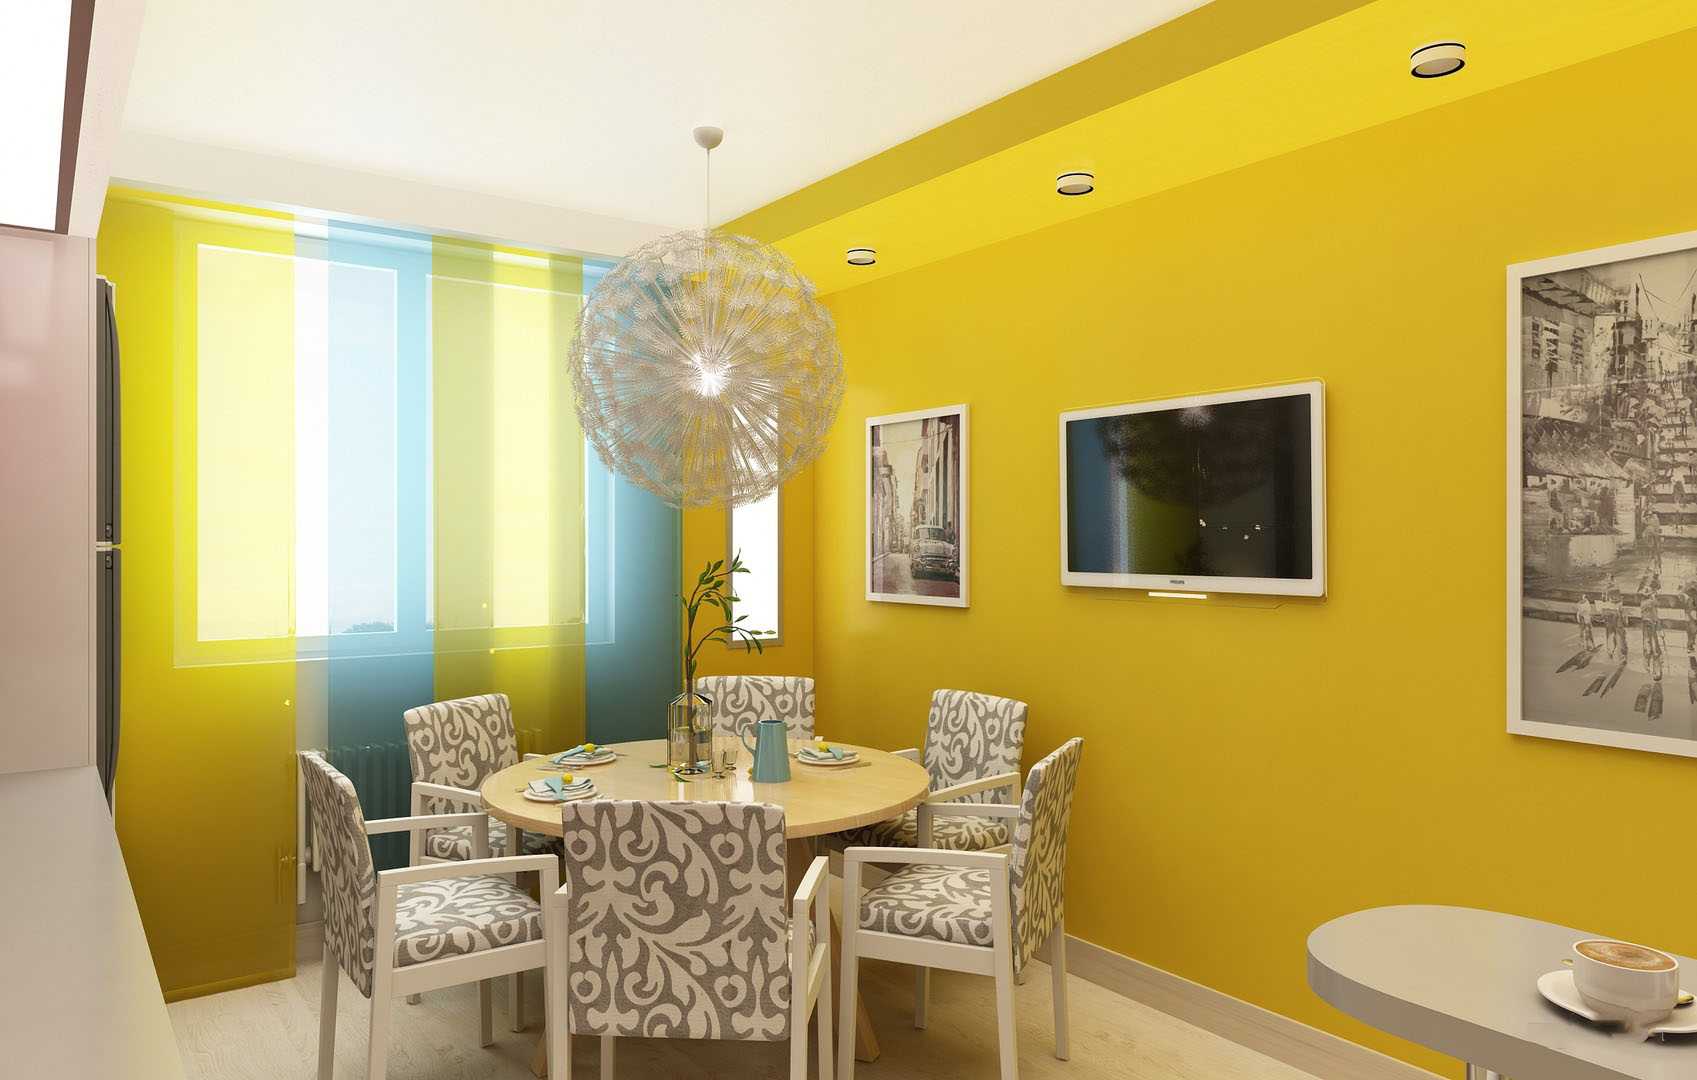 Желтая кухня: сочетание в интерьере желто-зеленого и салатового гарнитура с полом, стенами, шторами